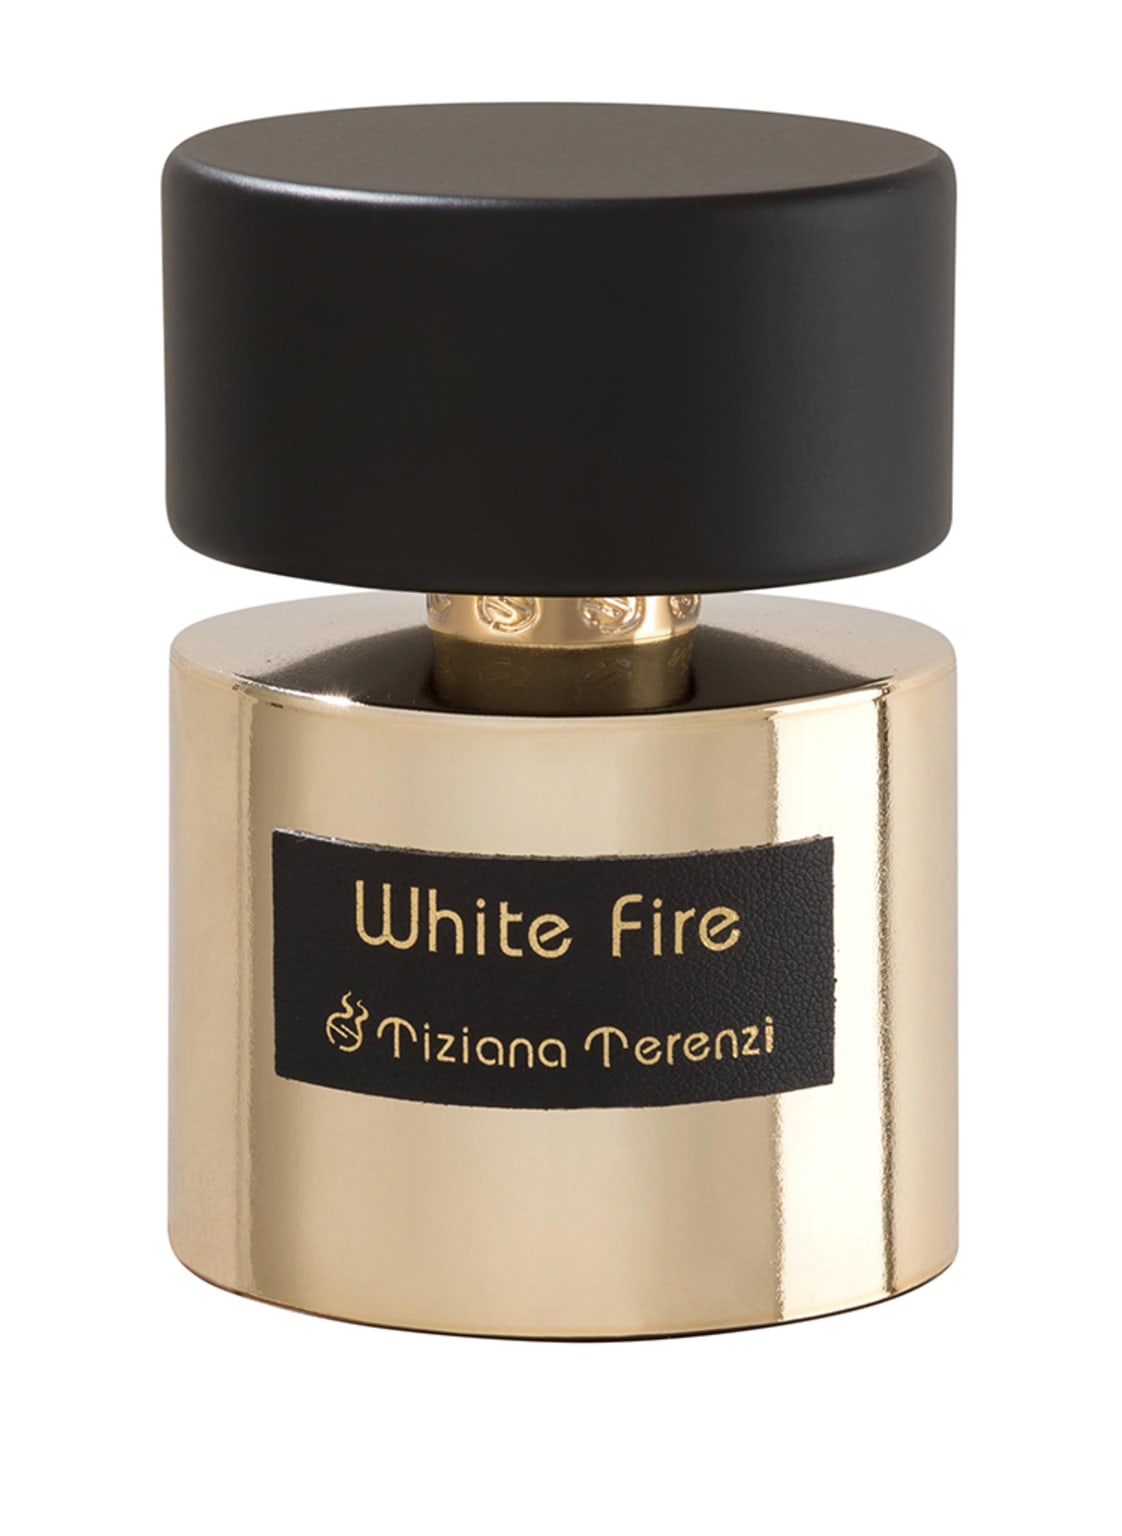 Tiziana Terenzi White Fire Extrait de Parfum 100 ml von Tiziana Terenzi